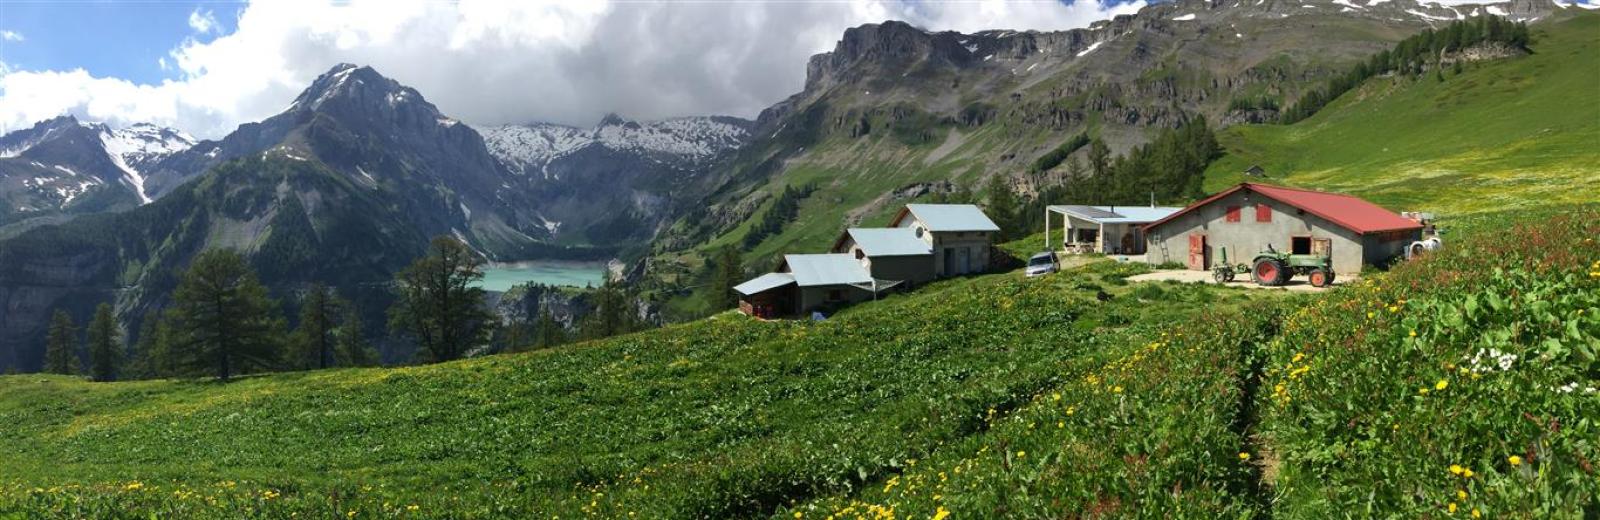 L’alpage de la famille Mudry se trouve au-dessus du barrage du Rawyl et du lac de Zeuzier près d’Anzère en Valais.